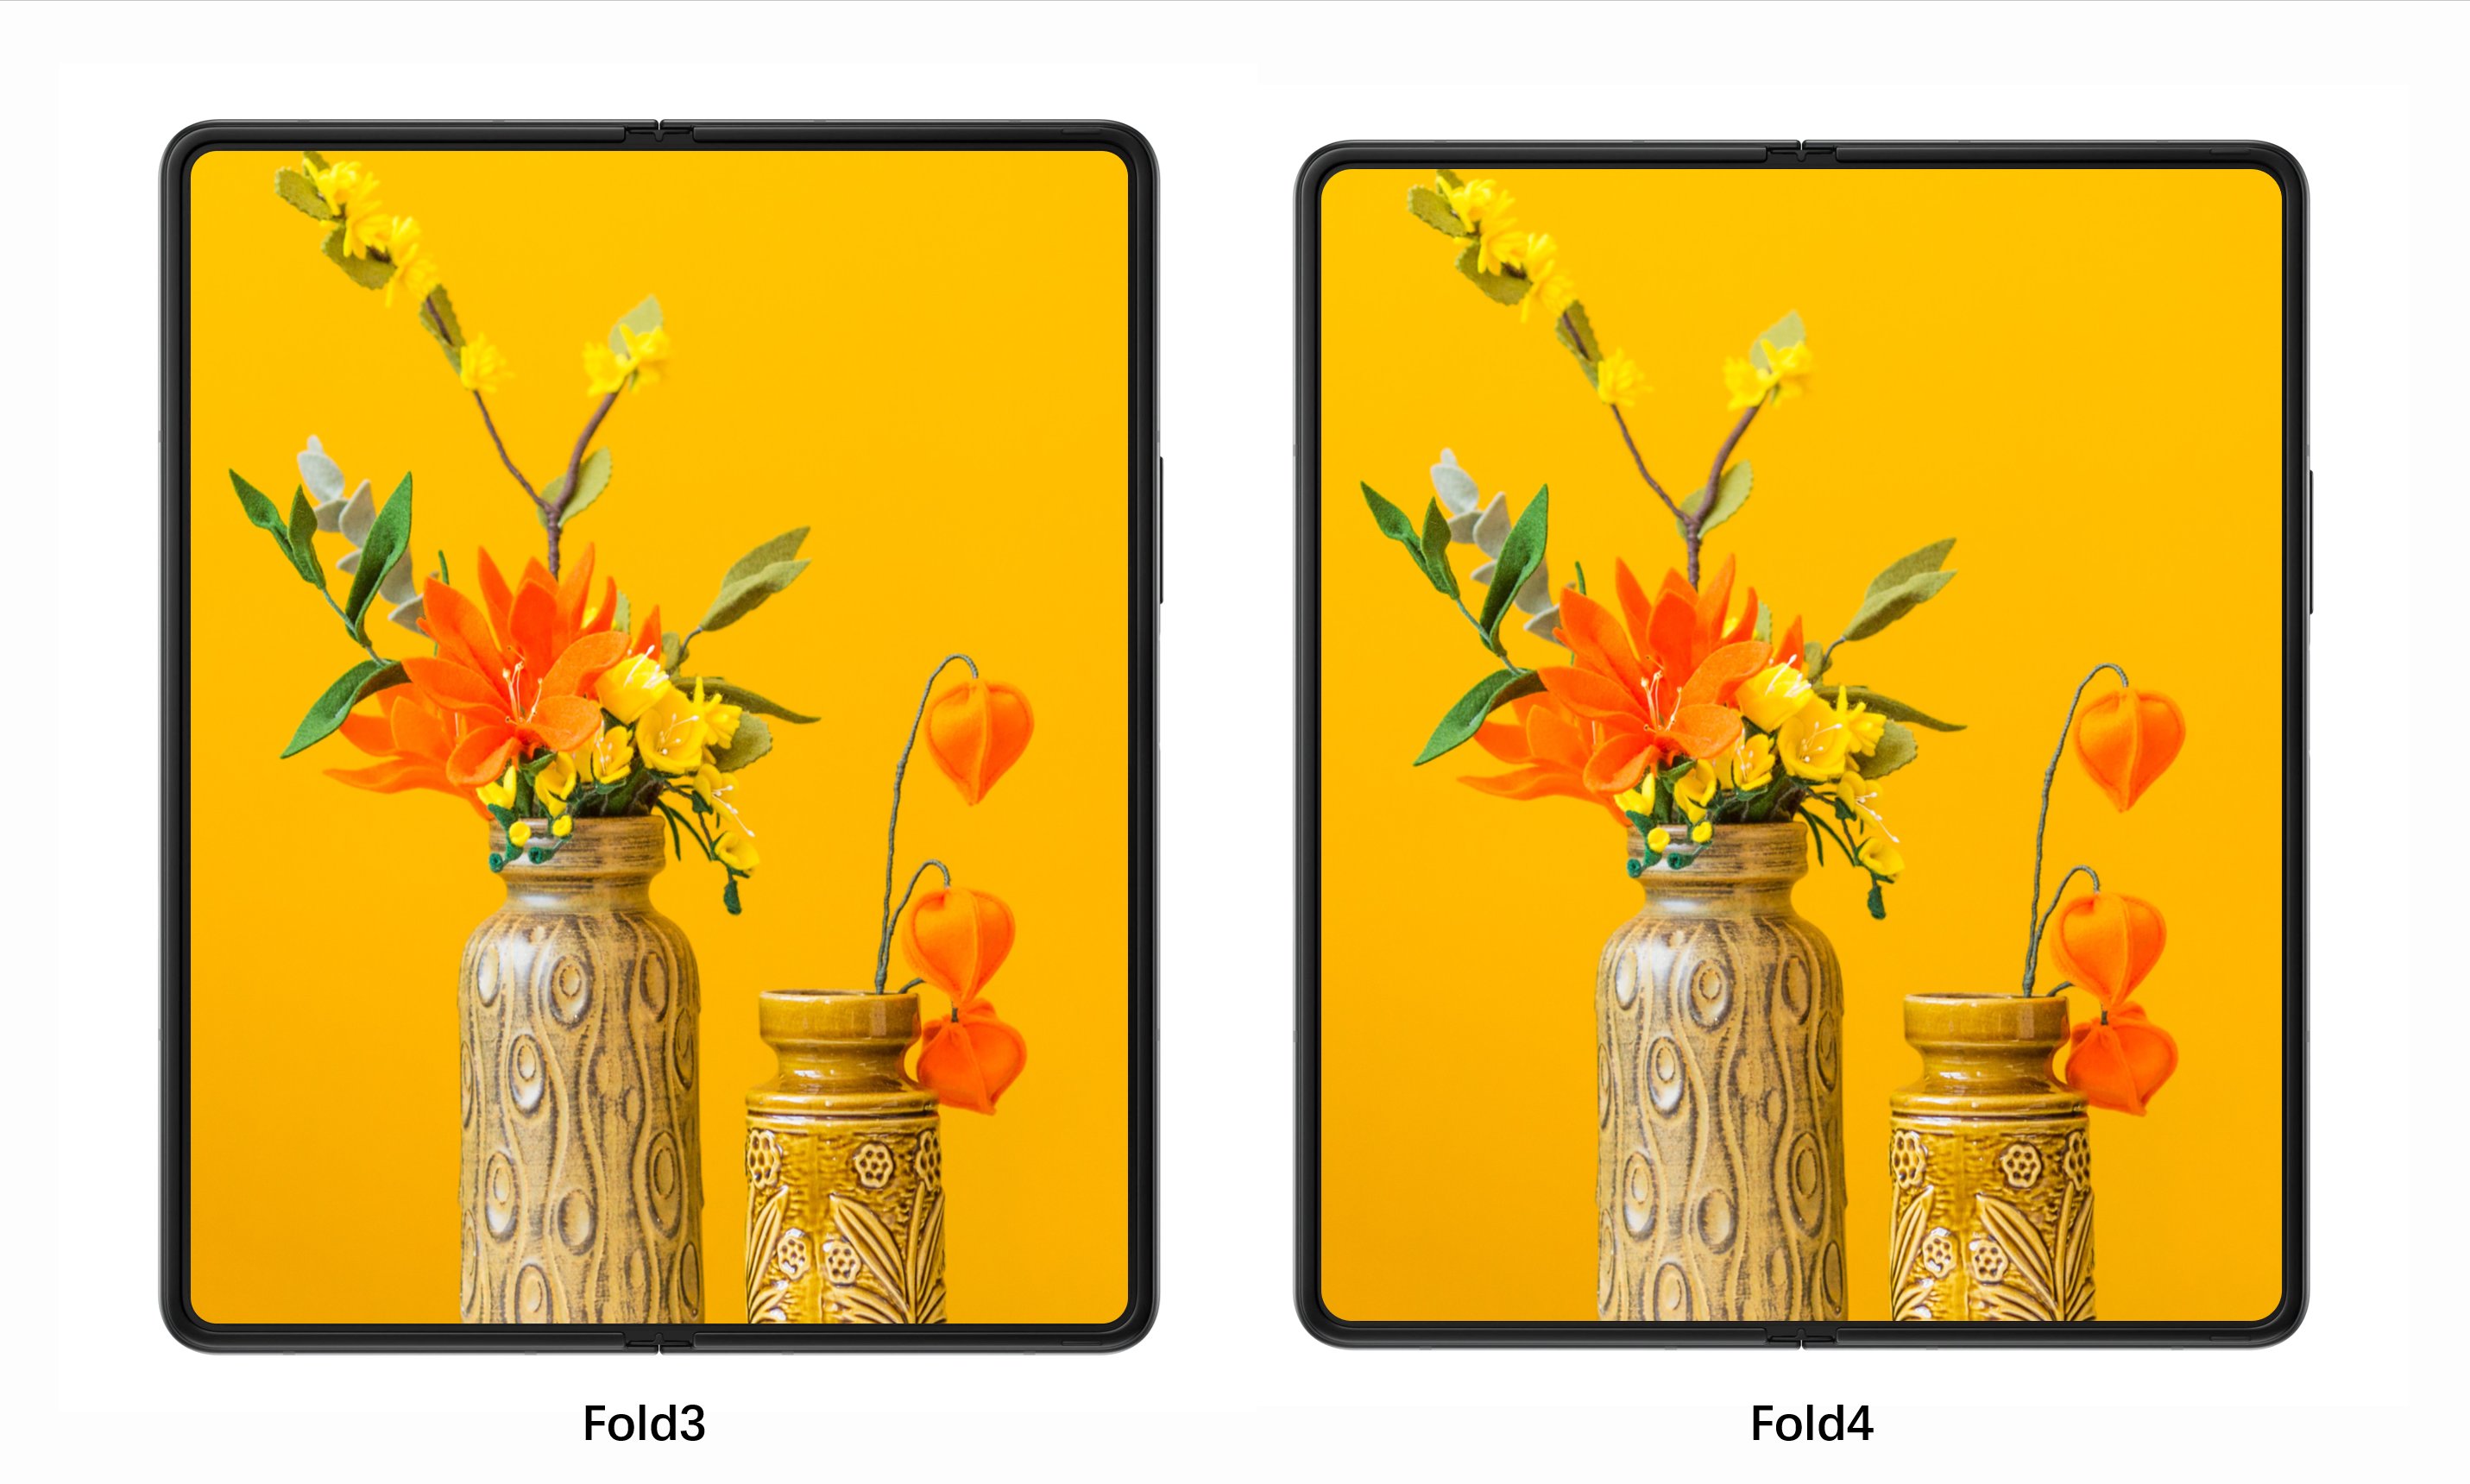 Samsung Galaxy Z Fold 4 Foldable Display